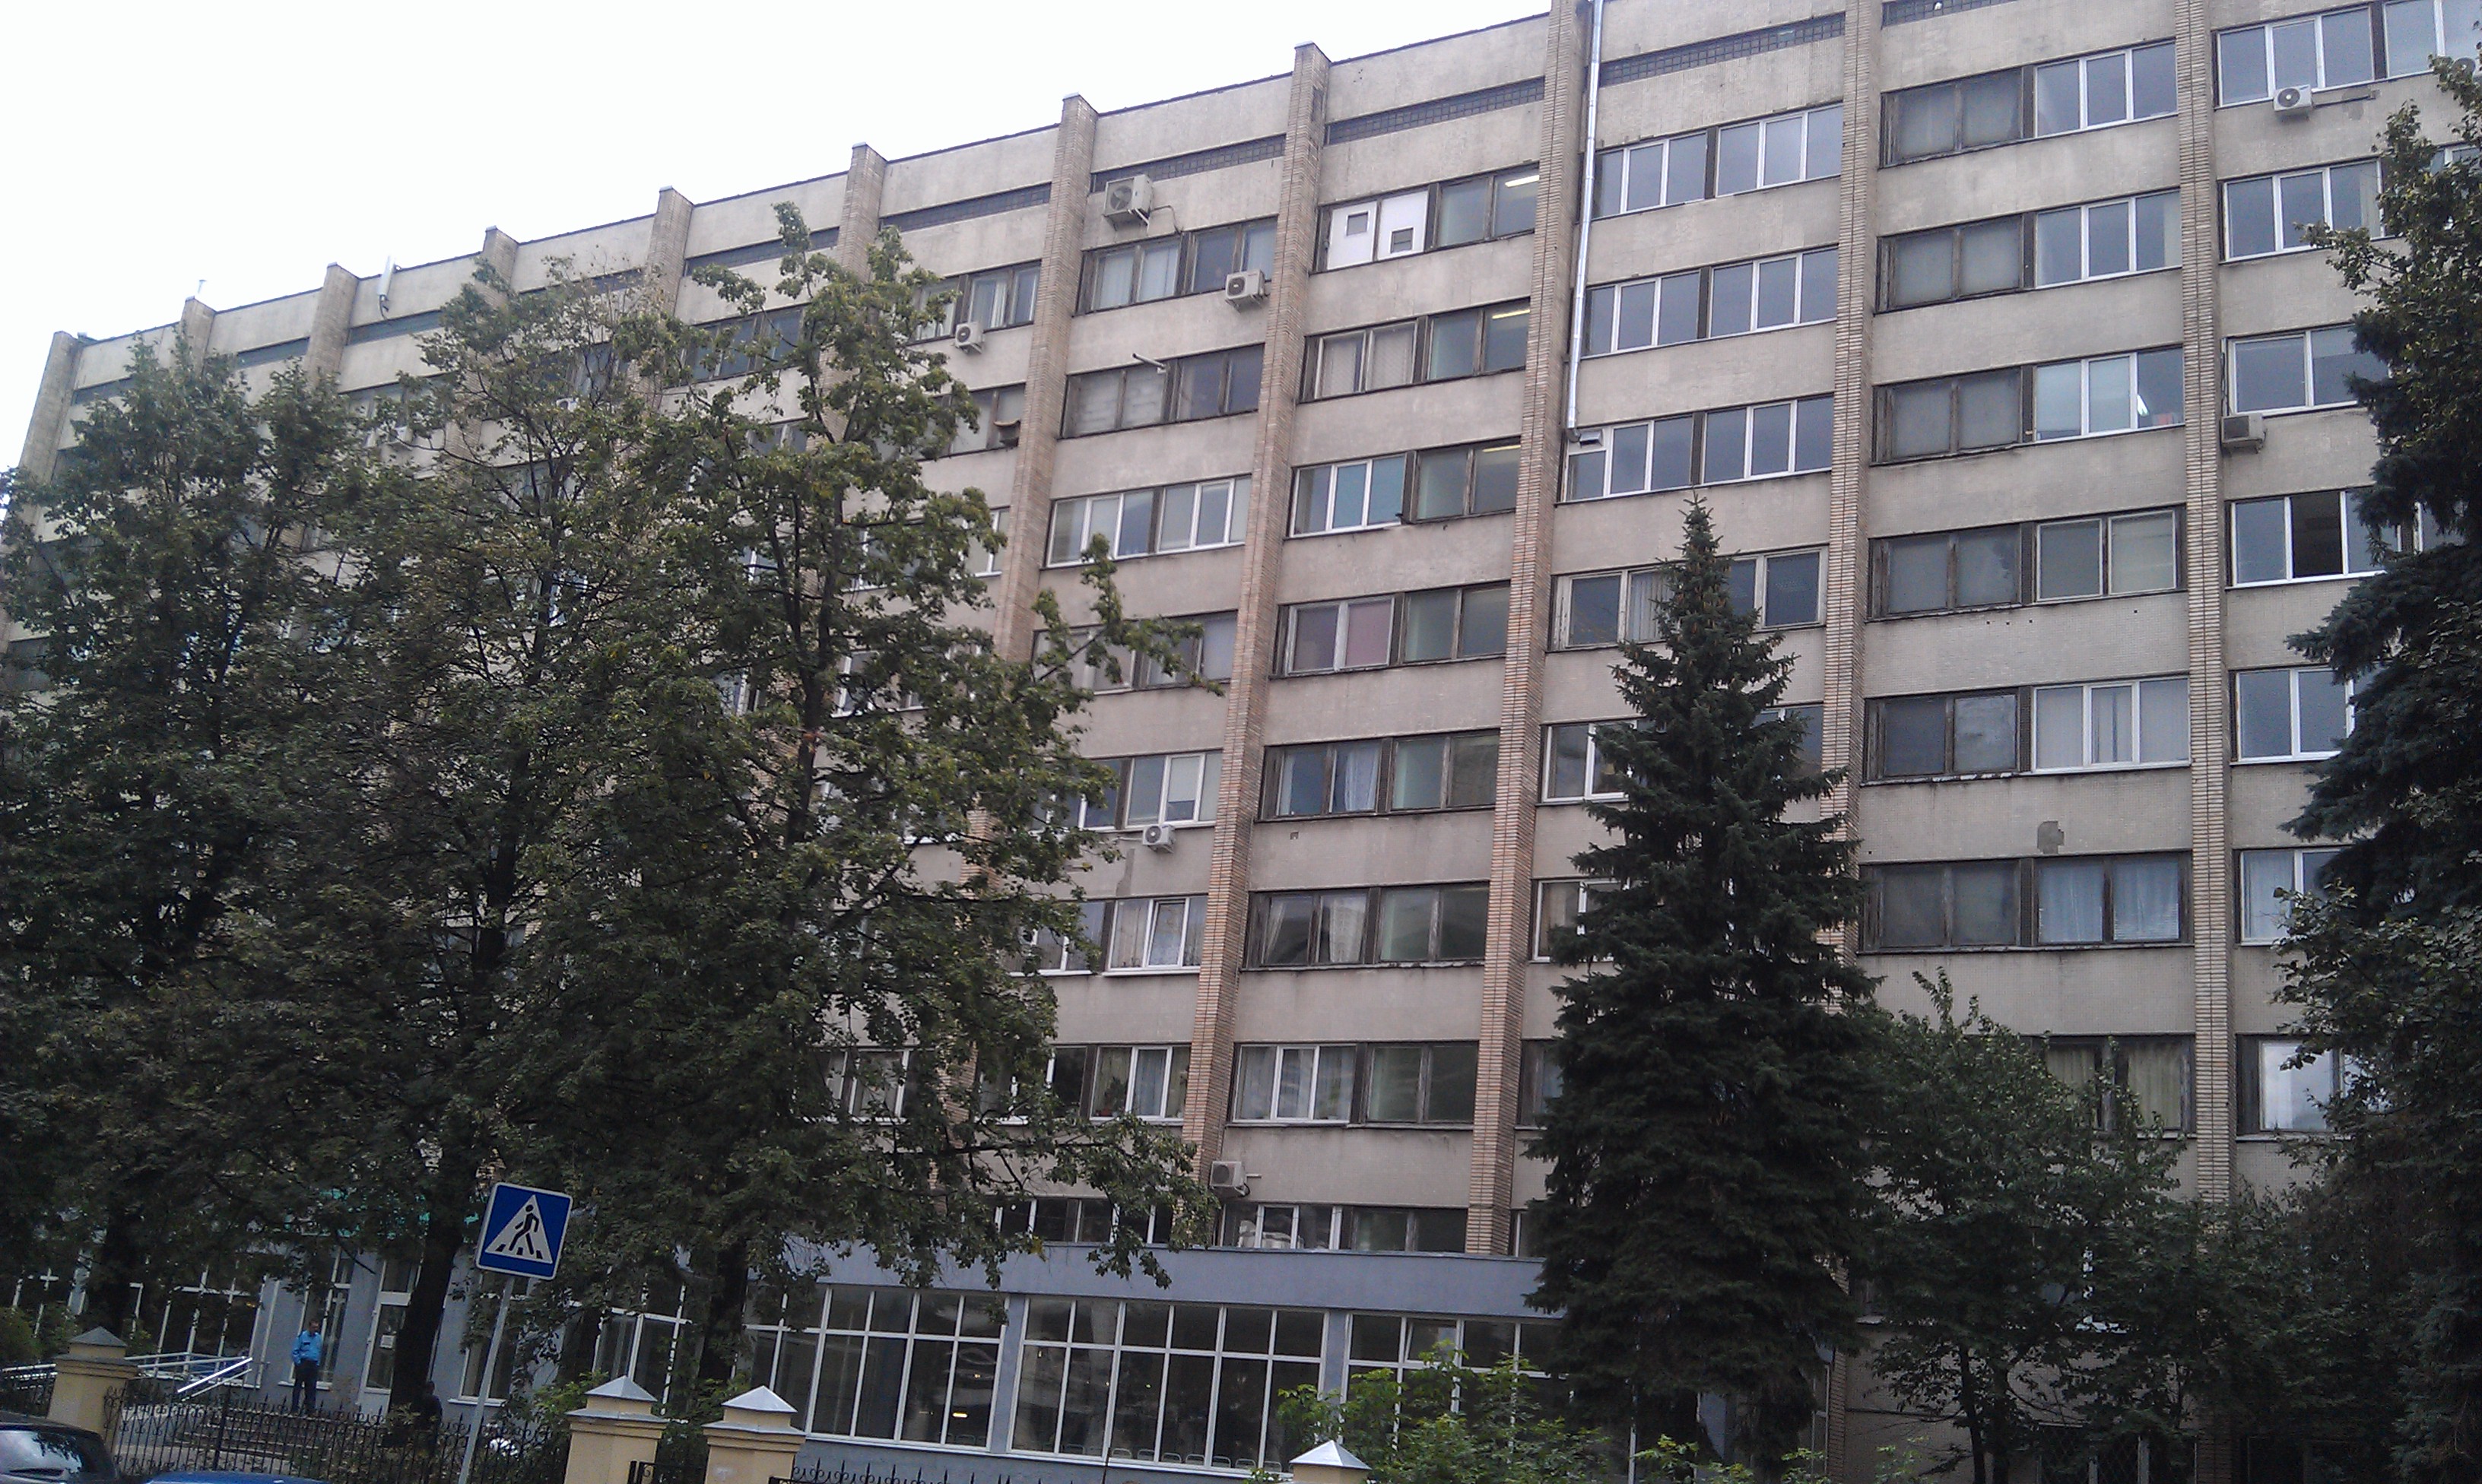 сеченова больница москва